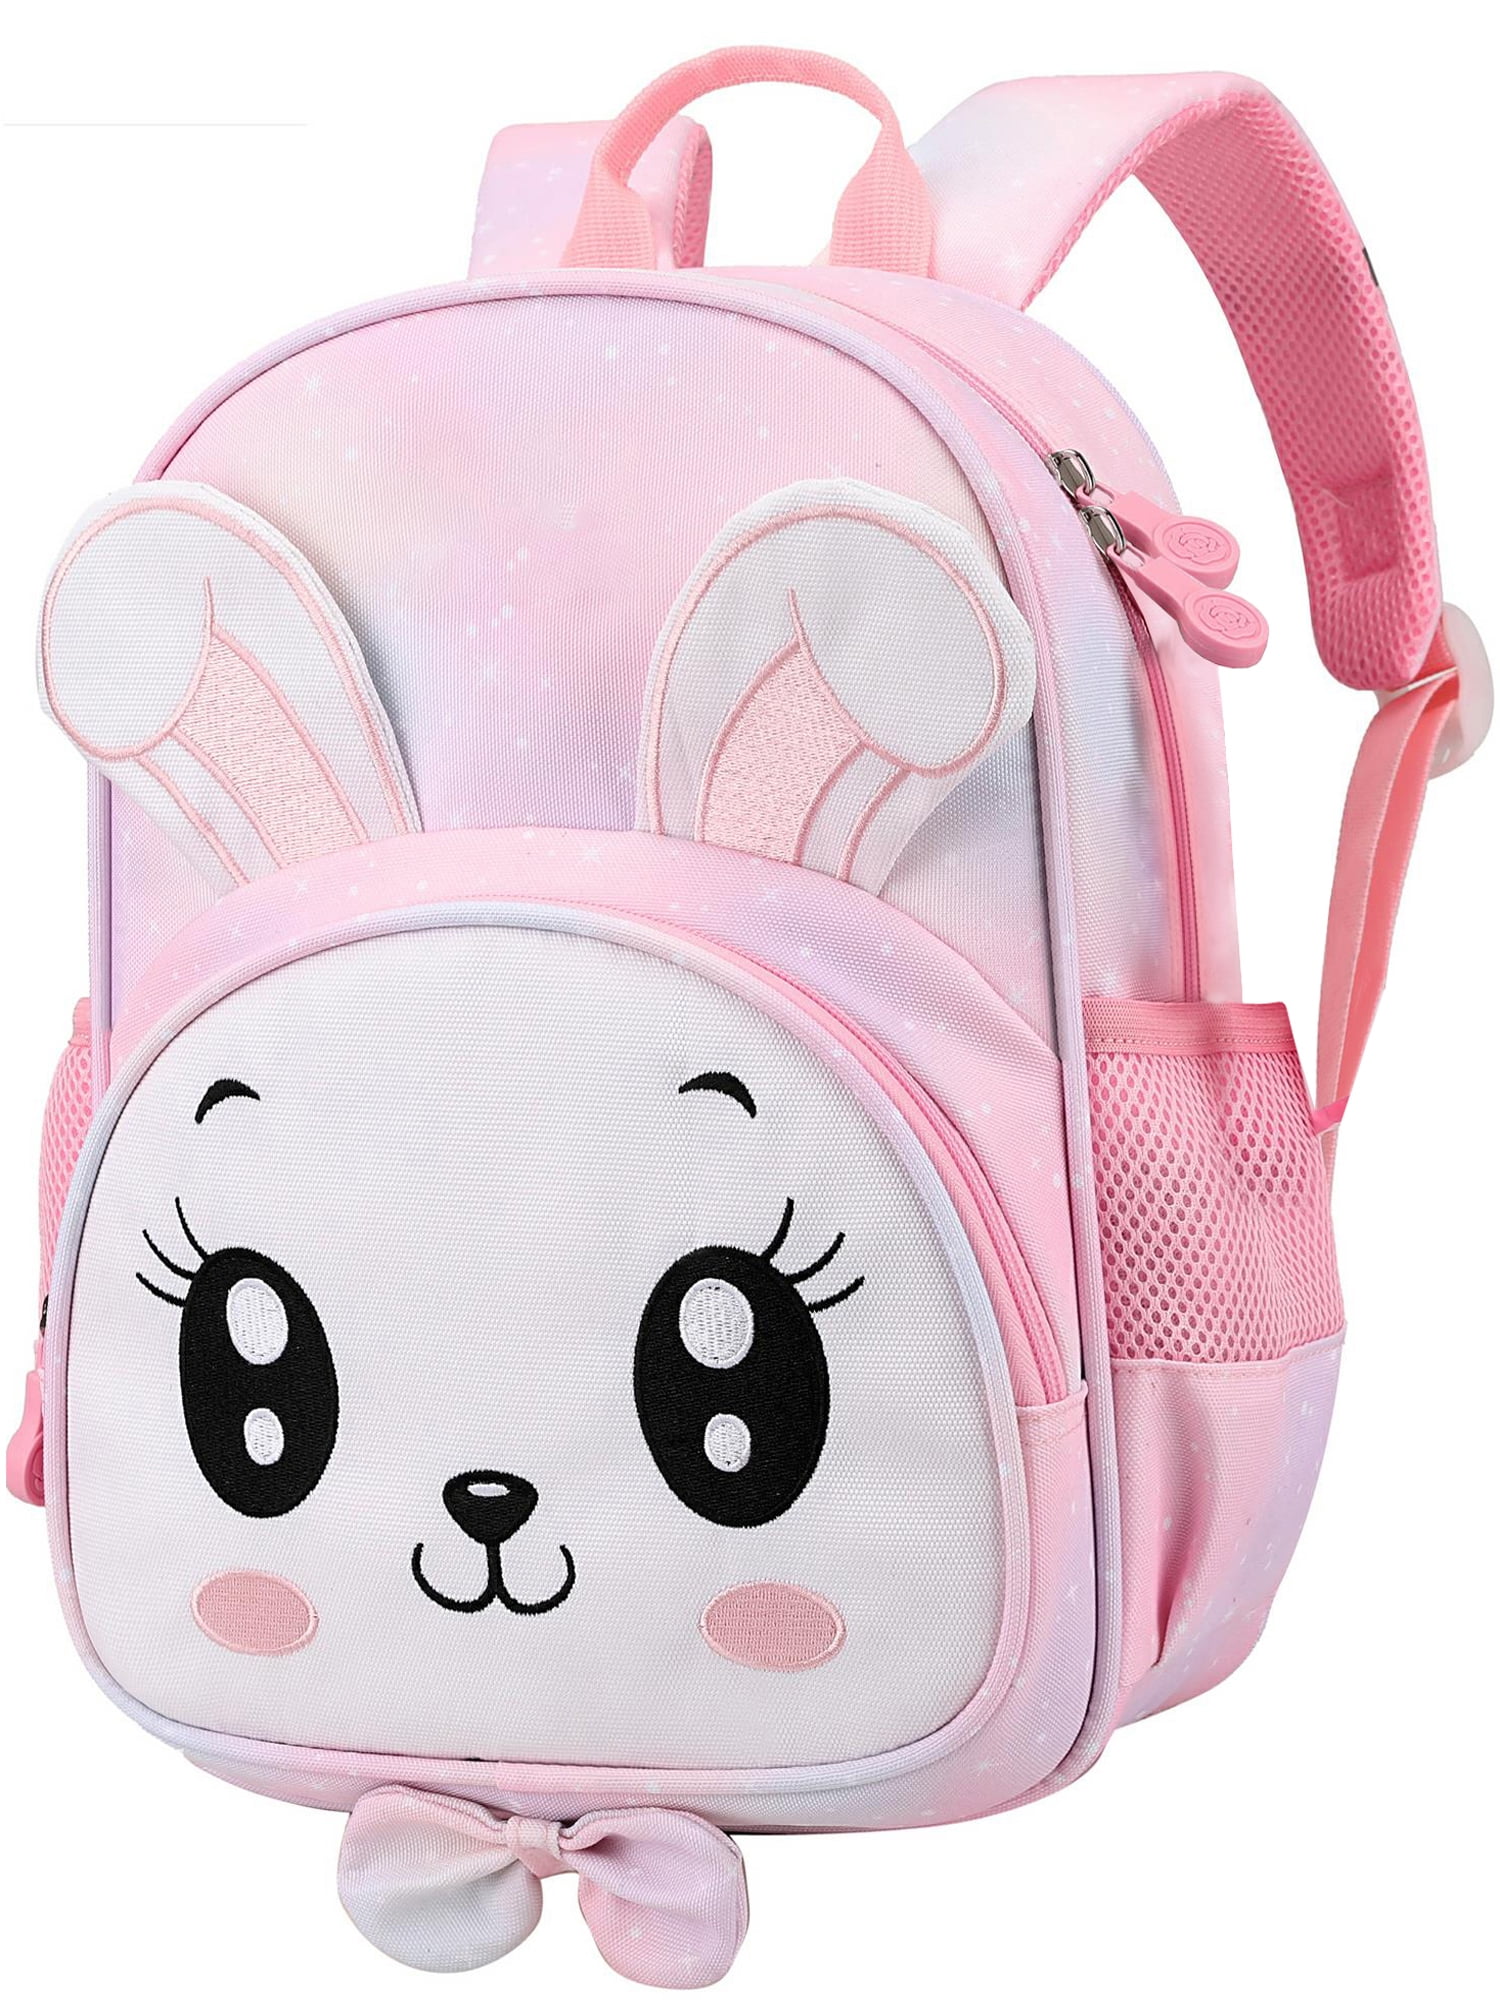 Ficcug School Bag Backpacks for Girls,Kindergarten Shoulder Children ...